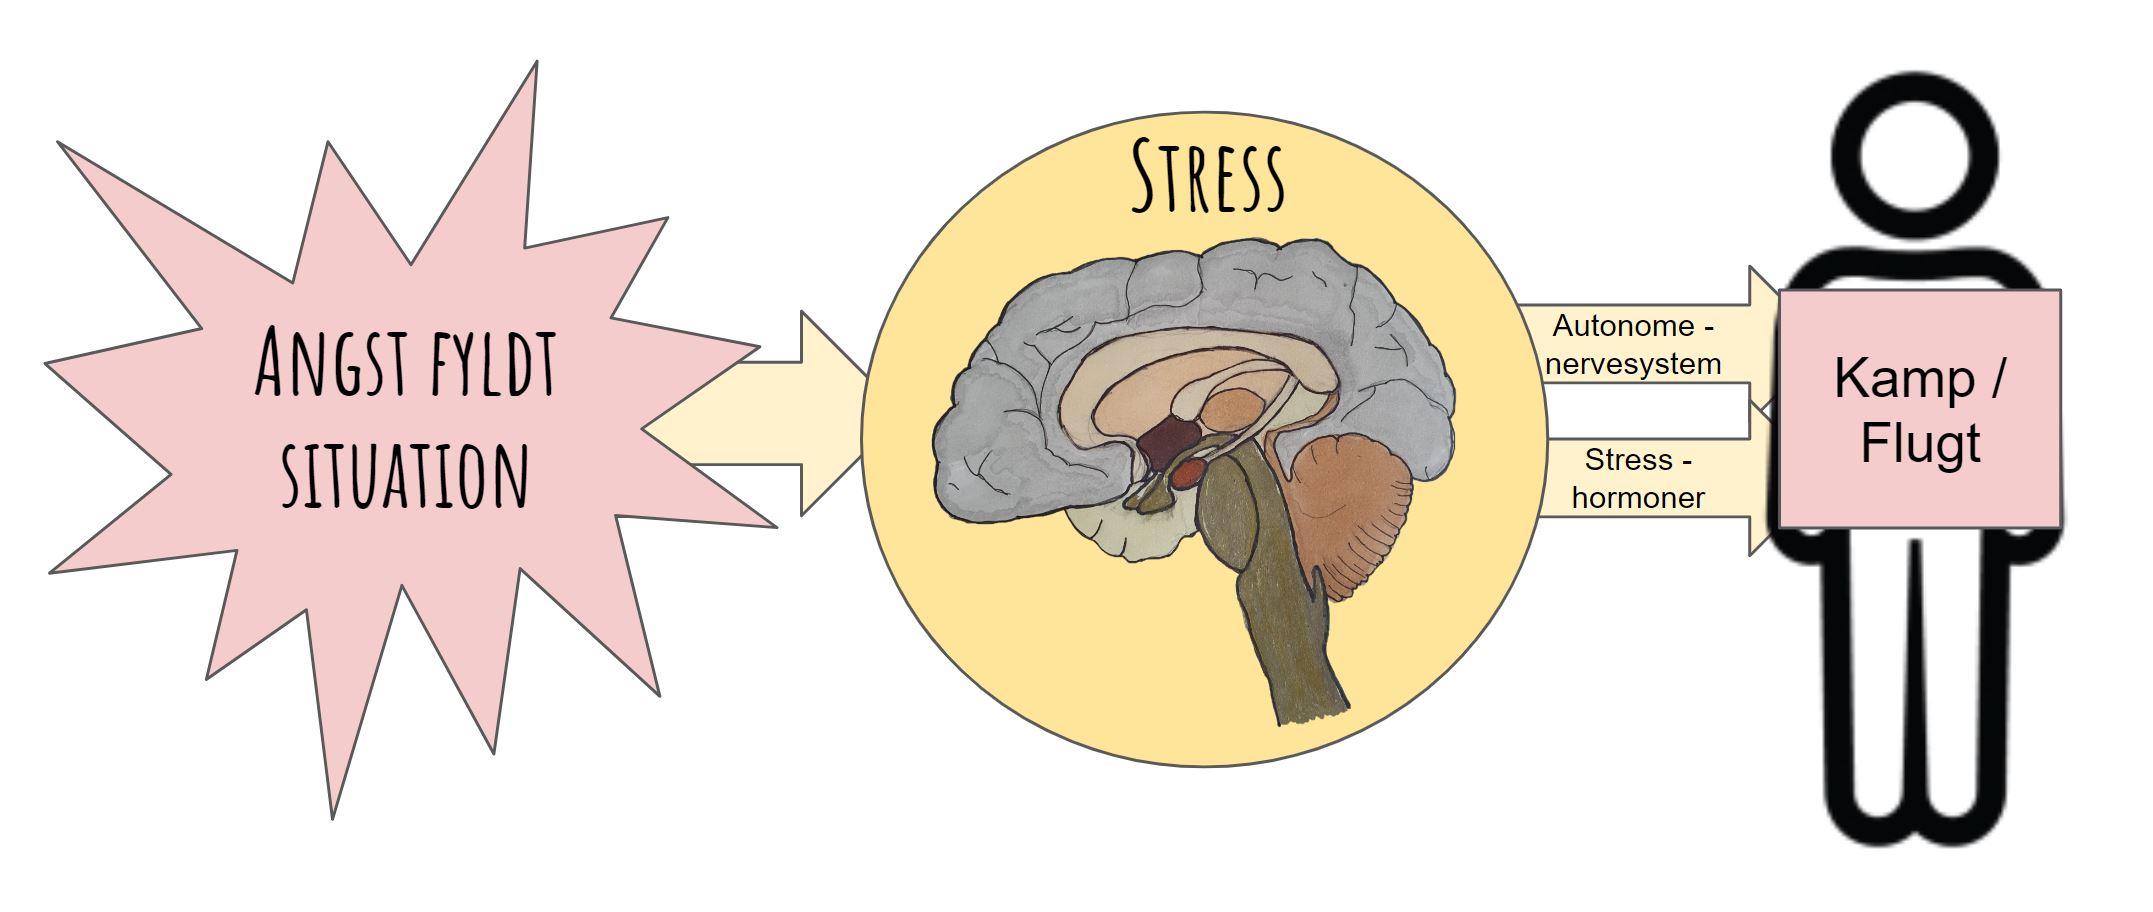 hvad hjælper mod stress - autonomenervesystem og stress hormoner